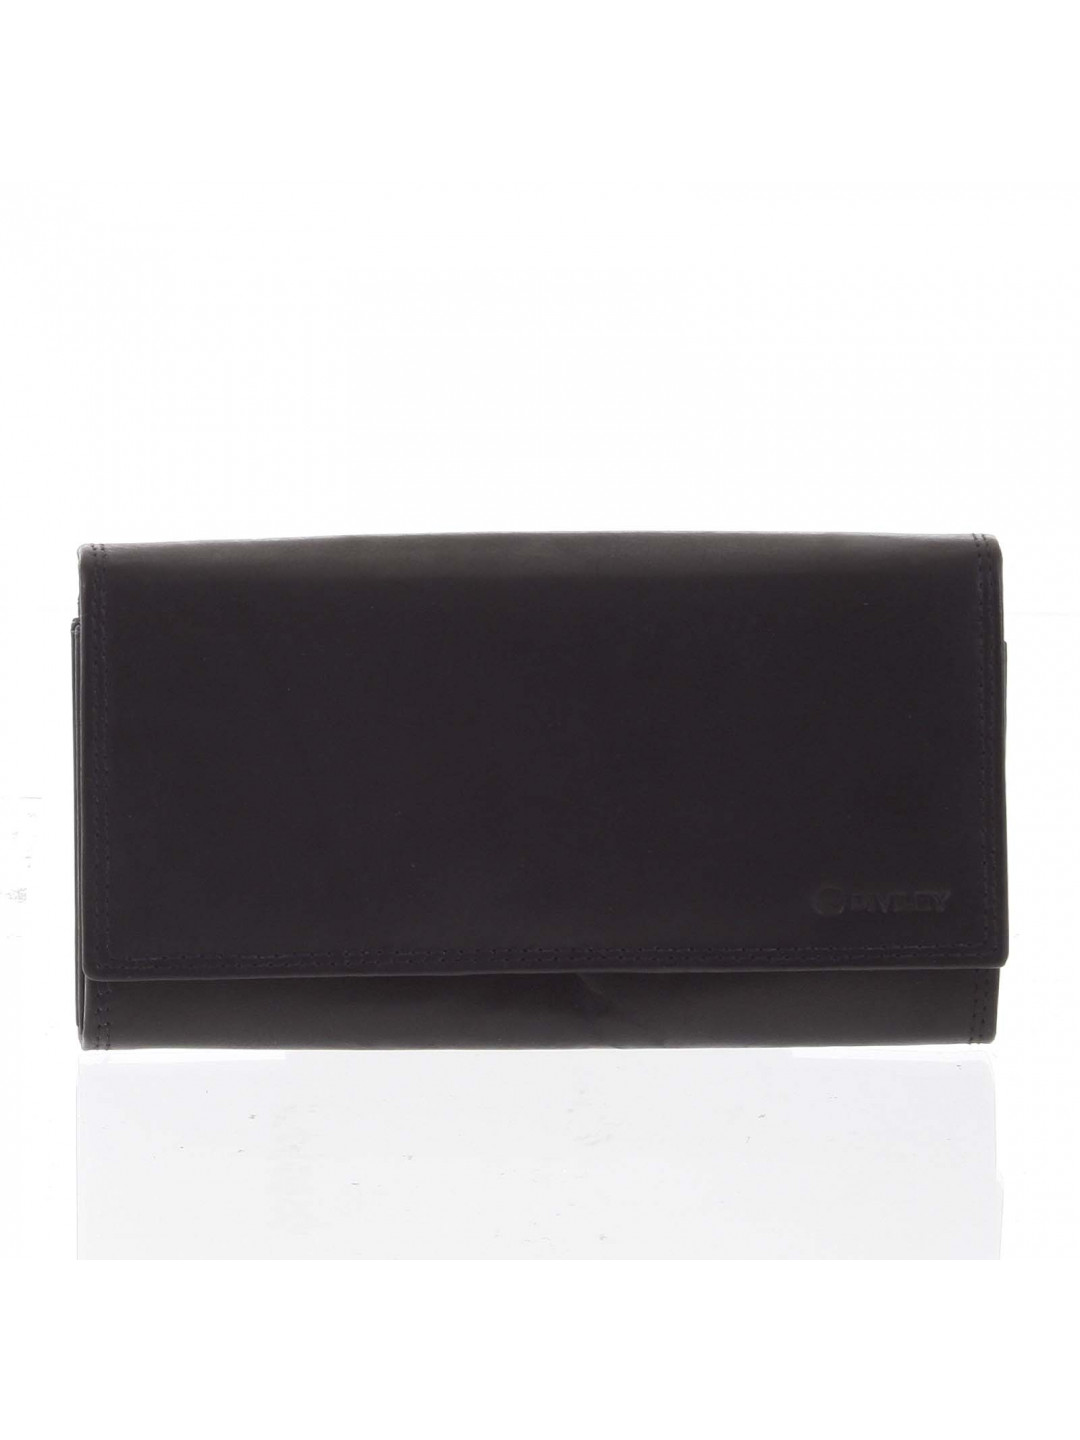 Moderní dámská kožená peněženka černá matná